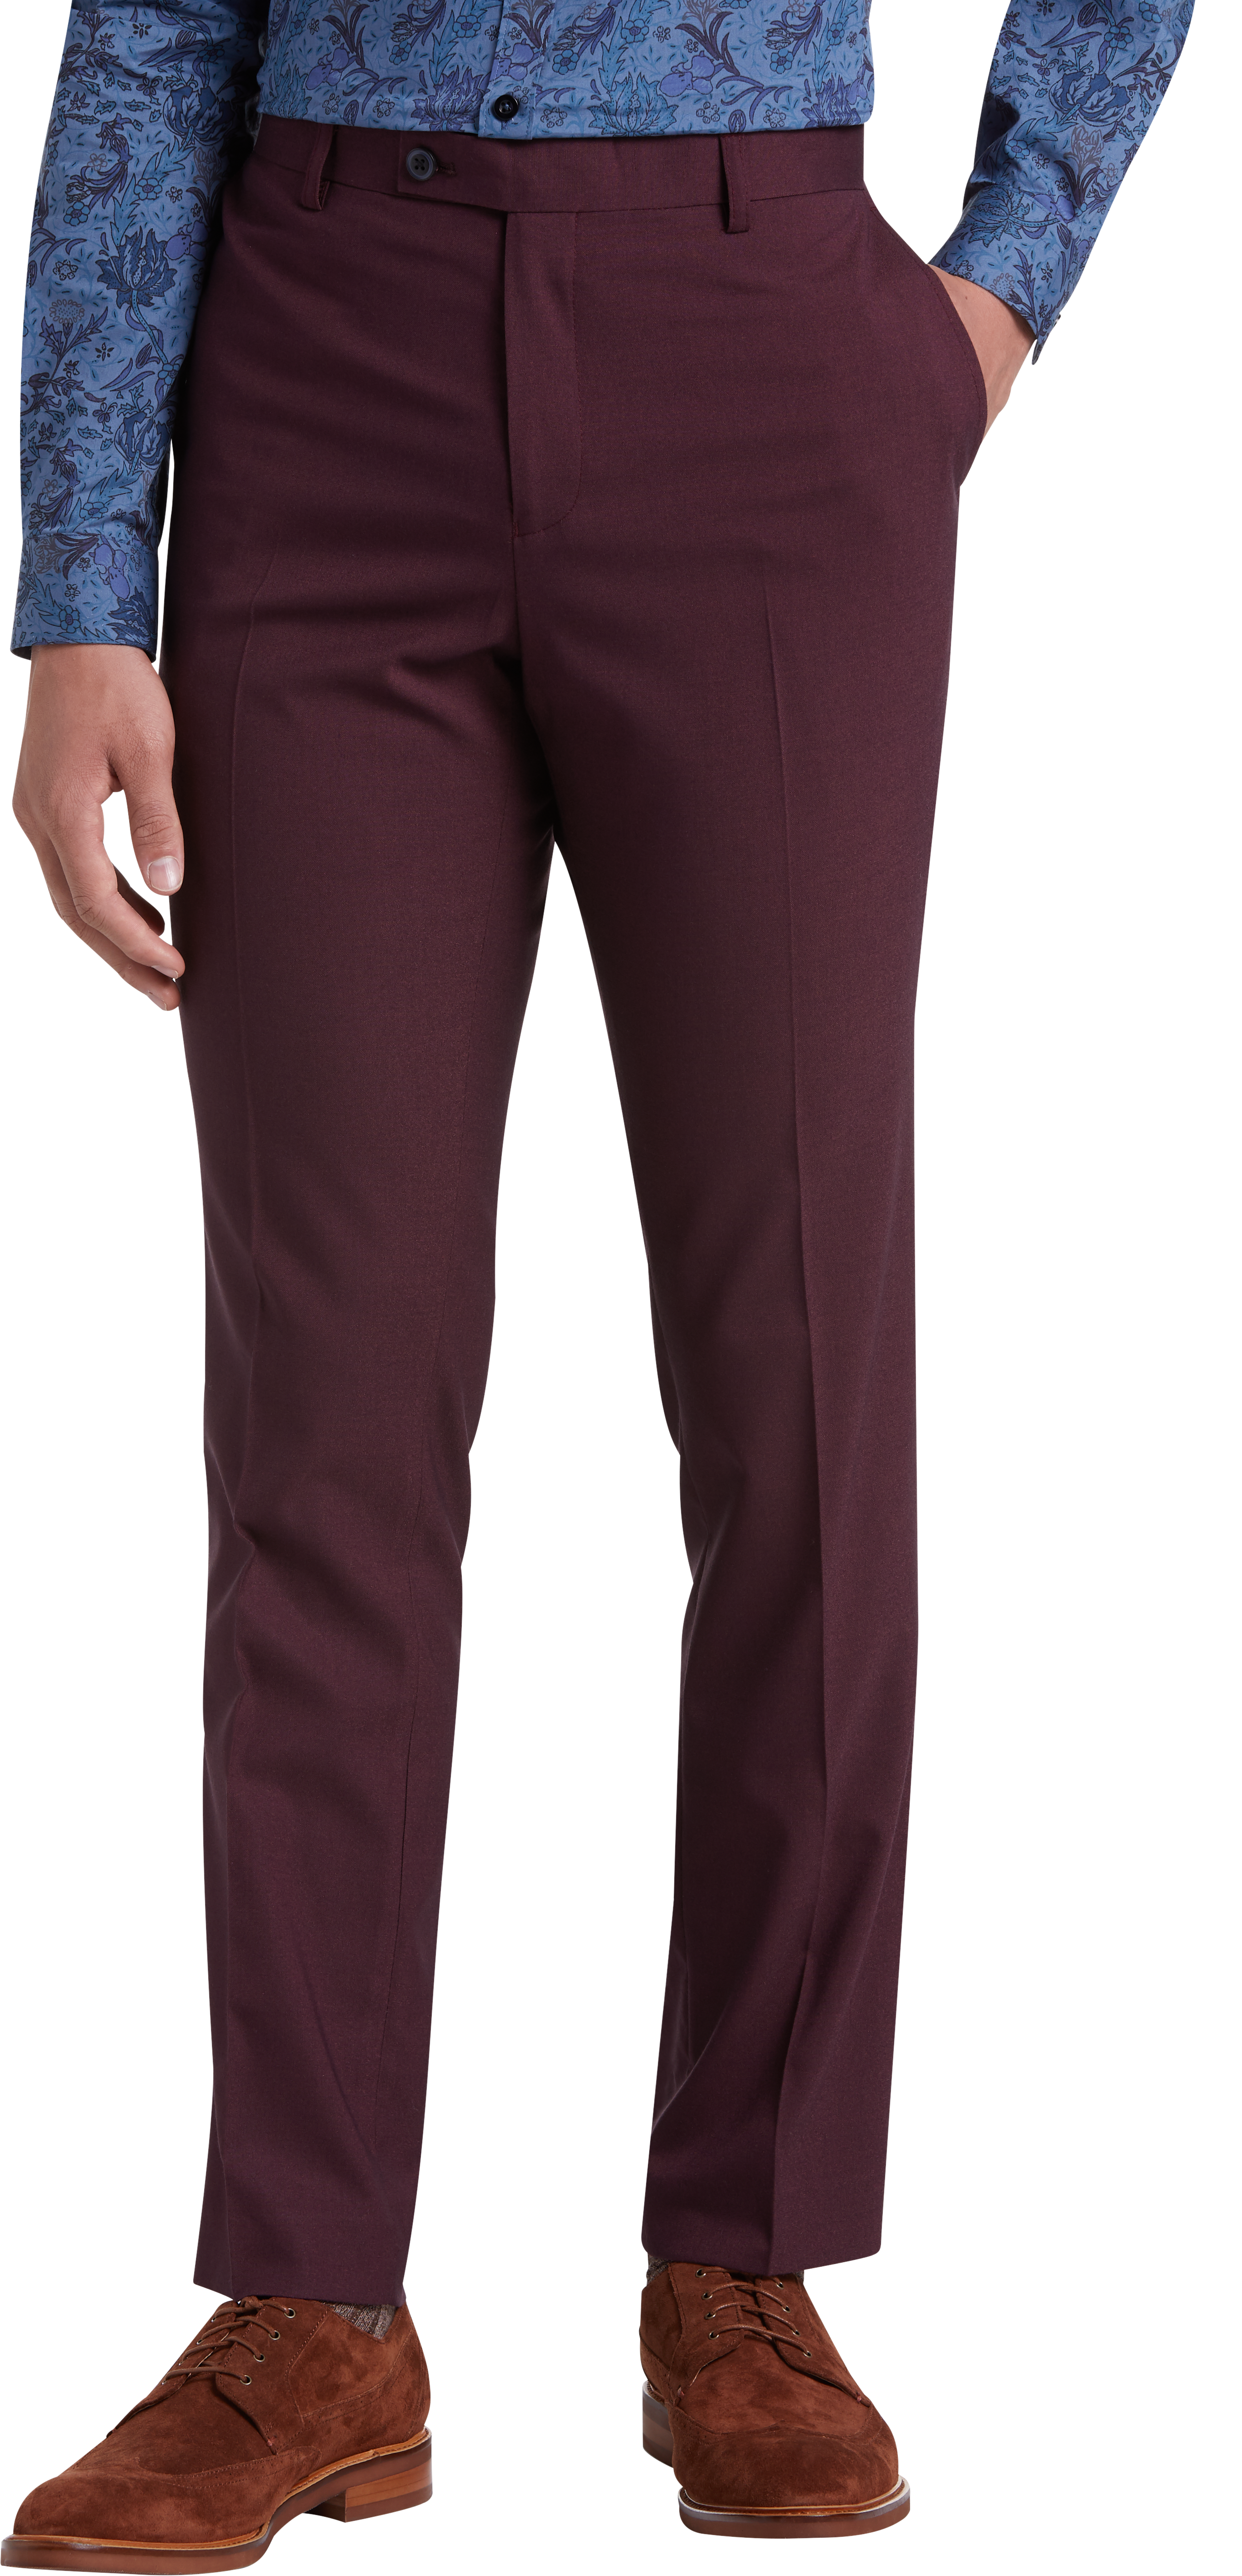 Paisley & Gray Slim Fit Suit Separates Pants, Dark Berry - Men's Suits ...